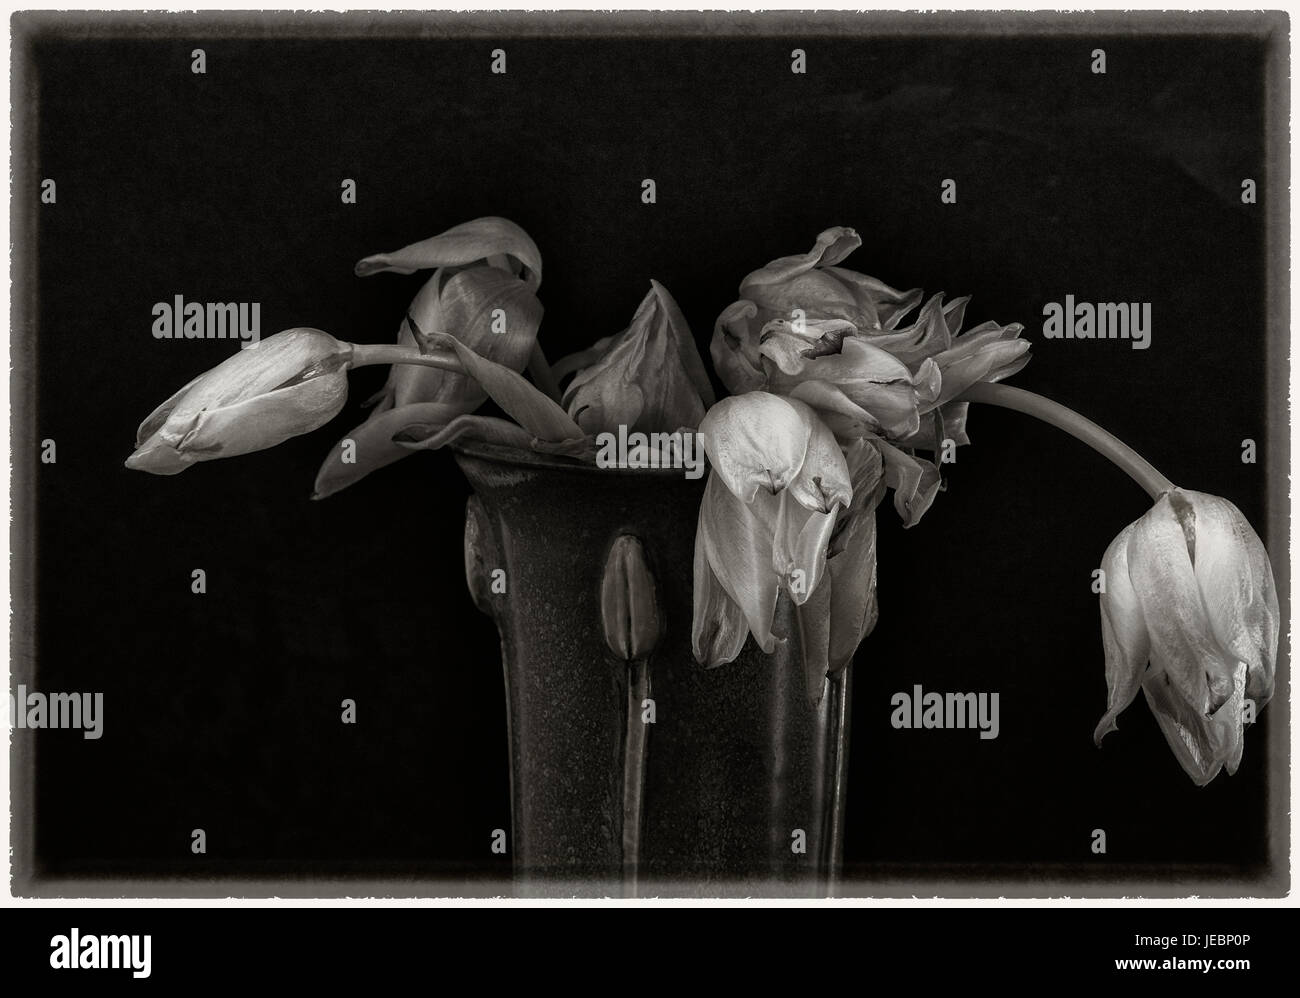 Les tulipes fanées dans le vase- still life sur fond noir Banque D'Images